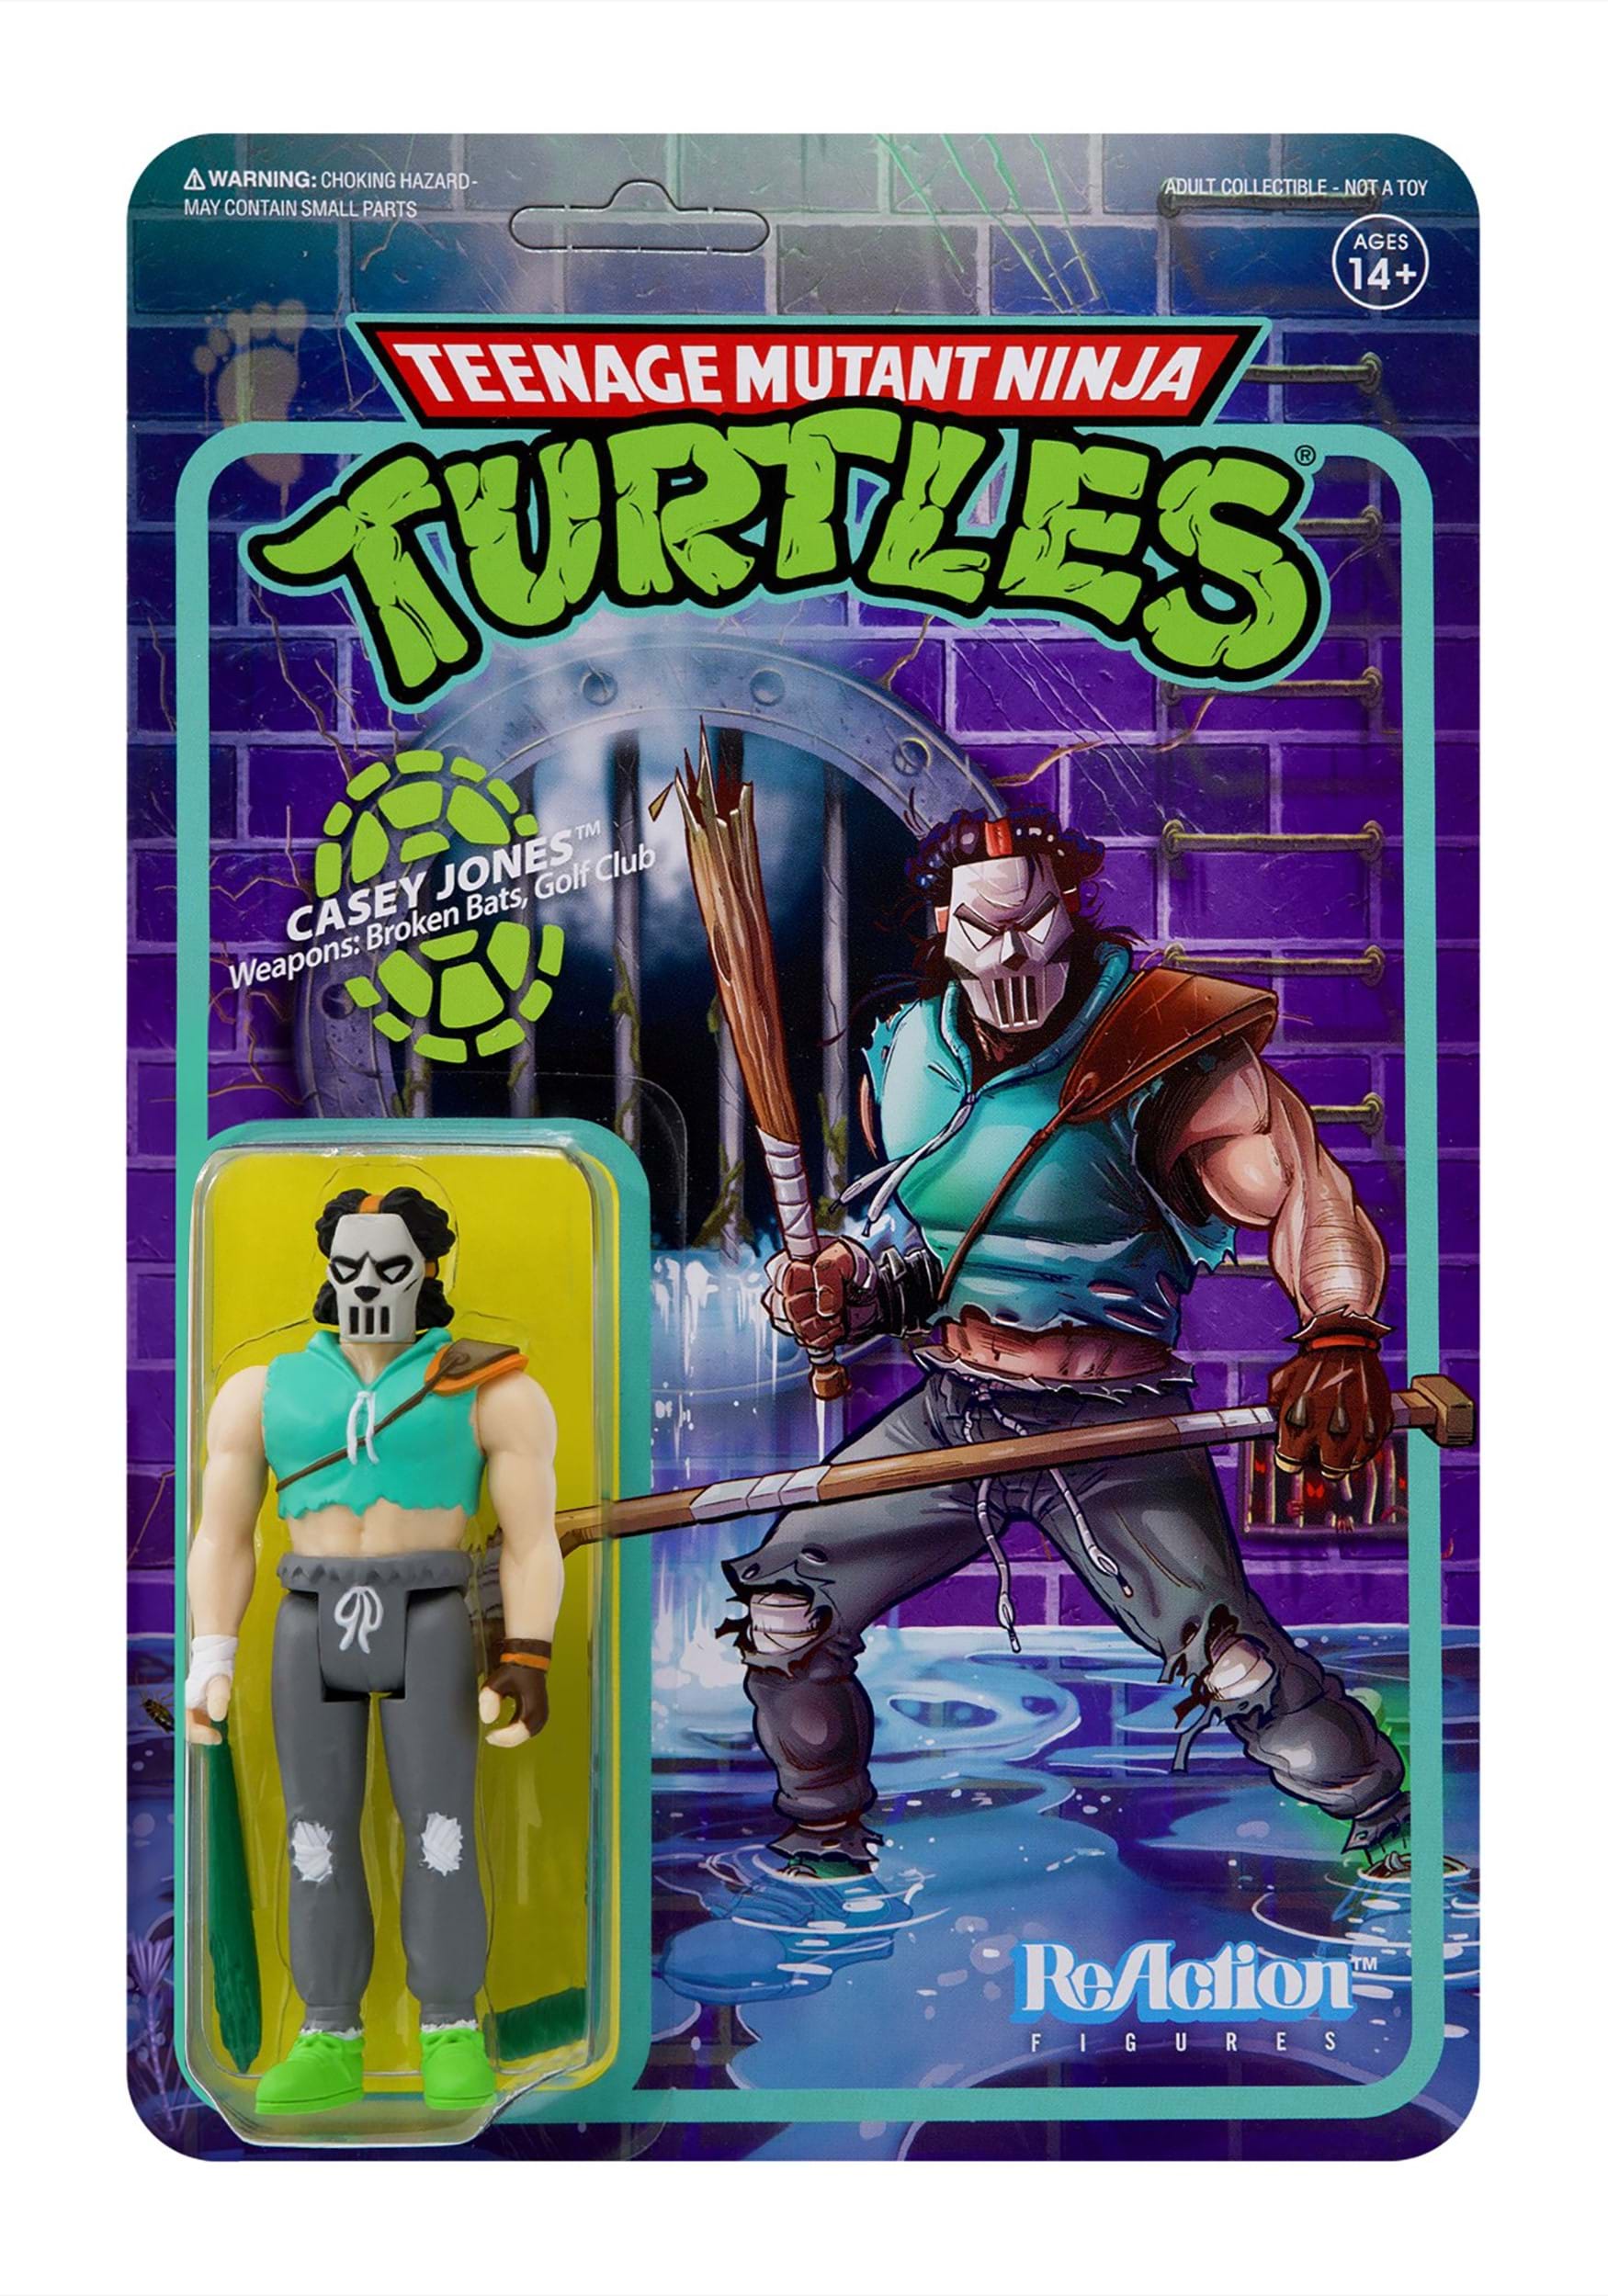 Casey Jones ReAction Figures From Teenage Mutant Ninja Turtles